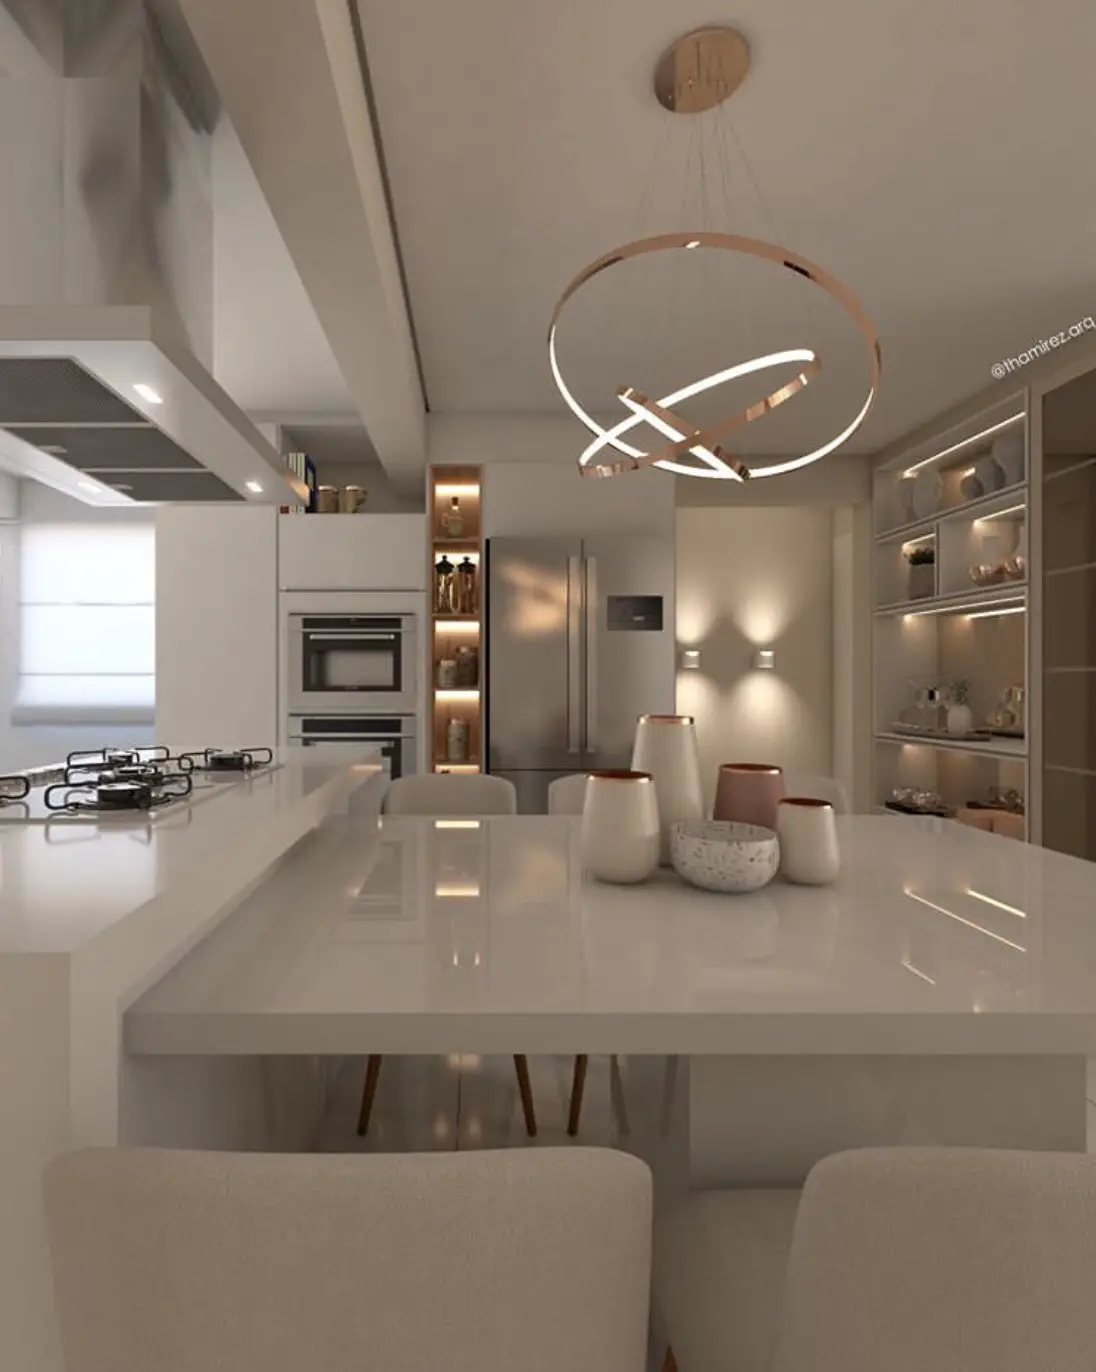 kitchen lighting ideas